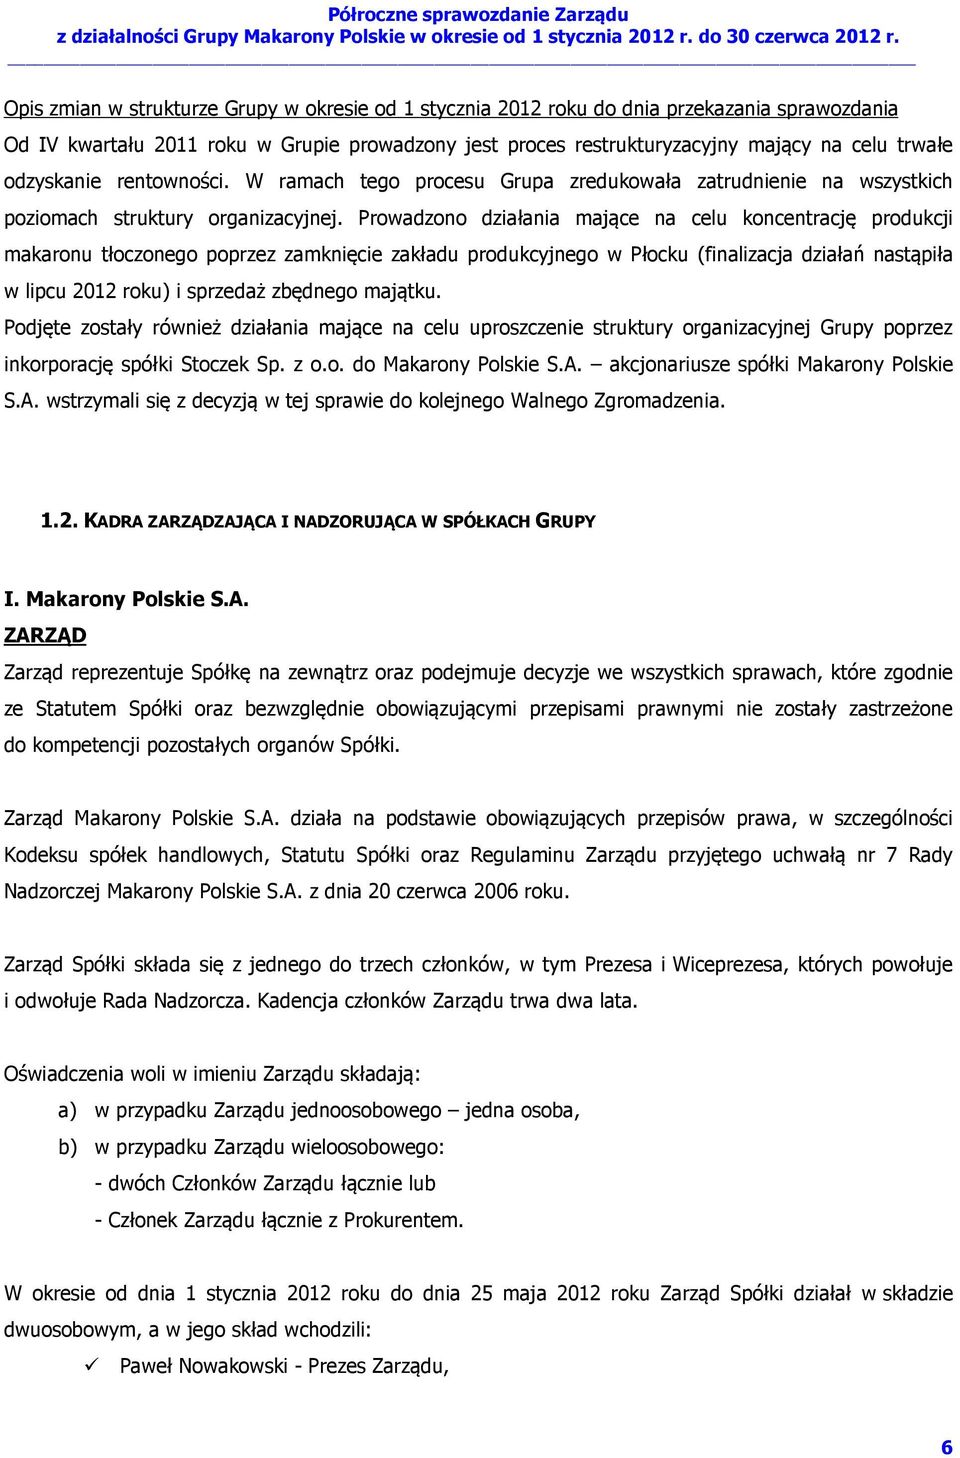 Prowadzono działania mające na celu koncentrację produkcji makaronu tłoczonego poprzez zamknięcie zakładu produkcyjnego w Płocku (finalizacja działań nastąpiła w lipcu 2012 roku) i sprzedaż zbędnego